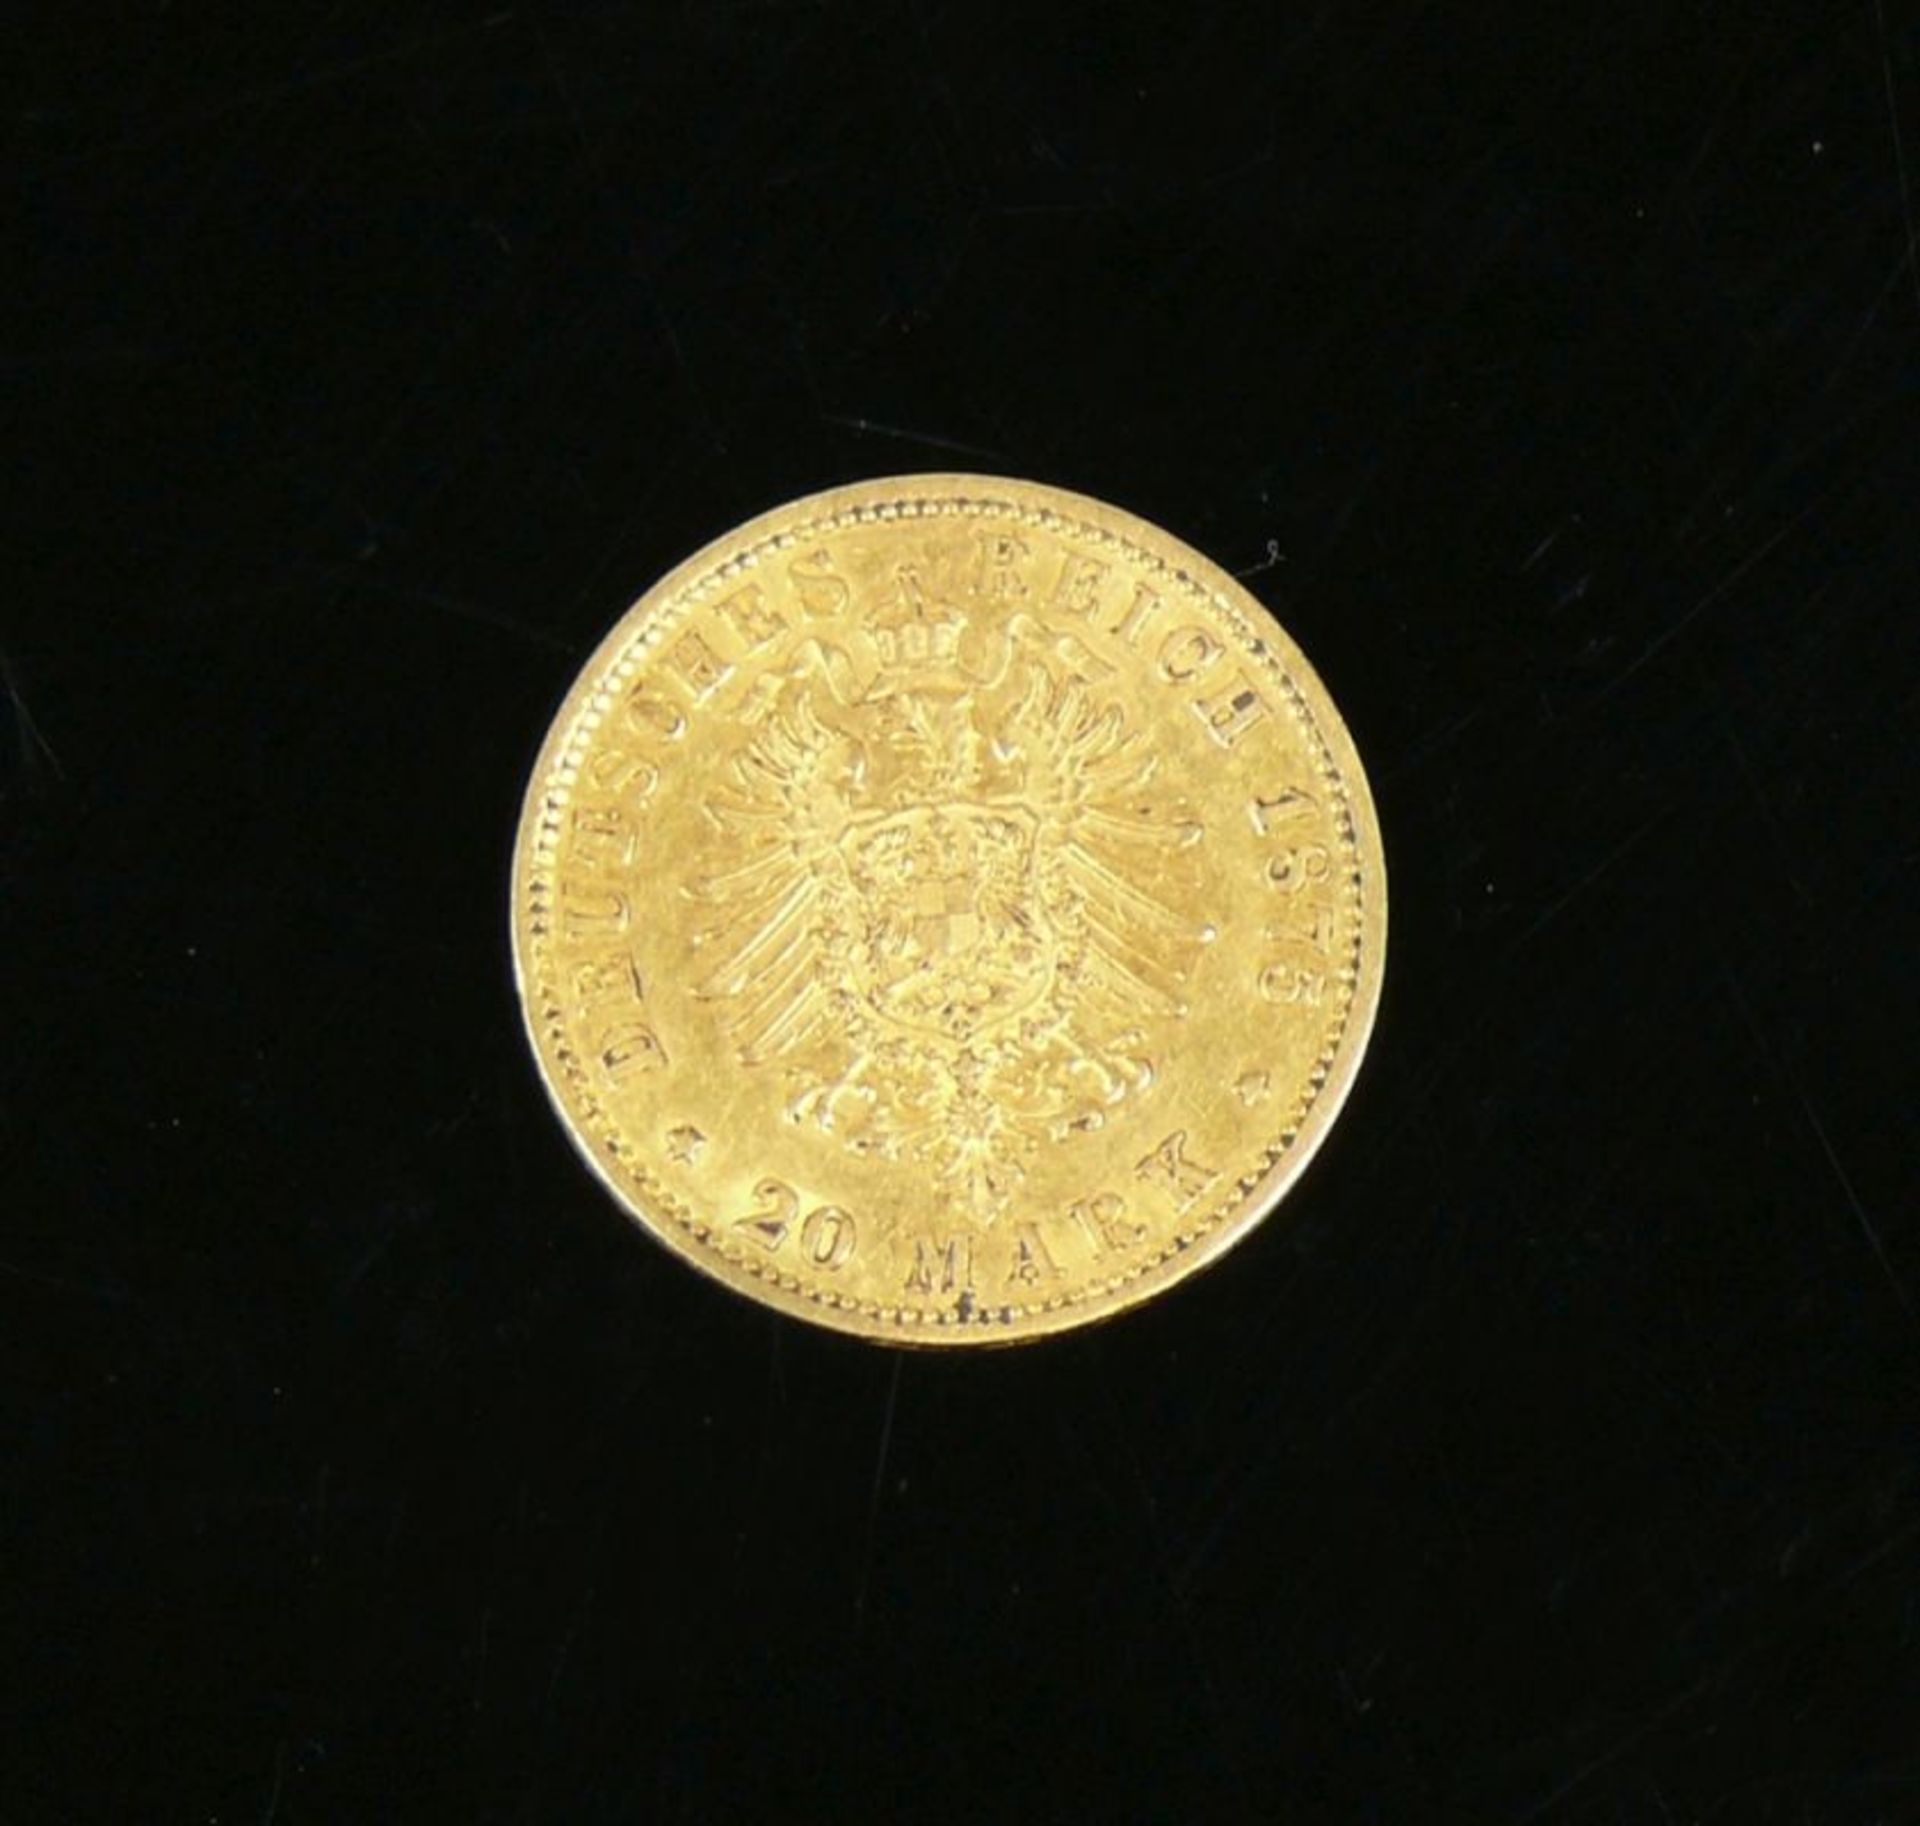 Goldmünze20 Mark; 1875, Wilhelm Deutscher Kaiser König von Preussen A; ss/vz - Bild 2 aus 2